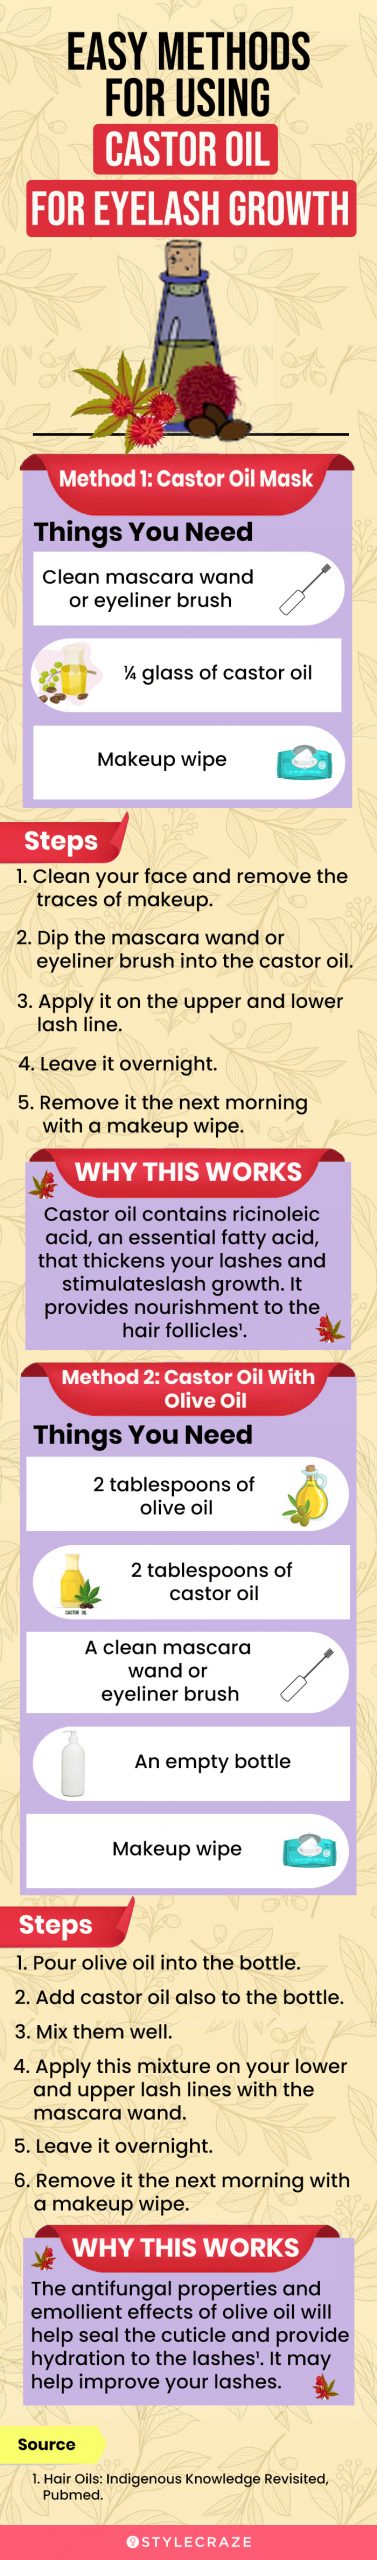 easy methods for using castor oil for eyelash growth (infographic)